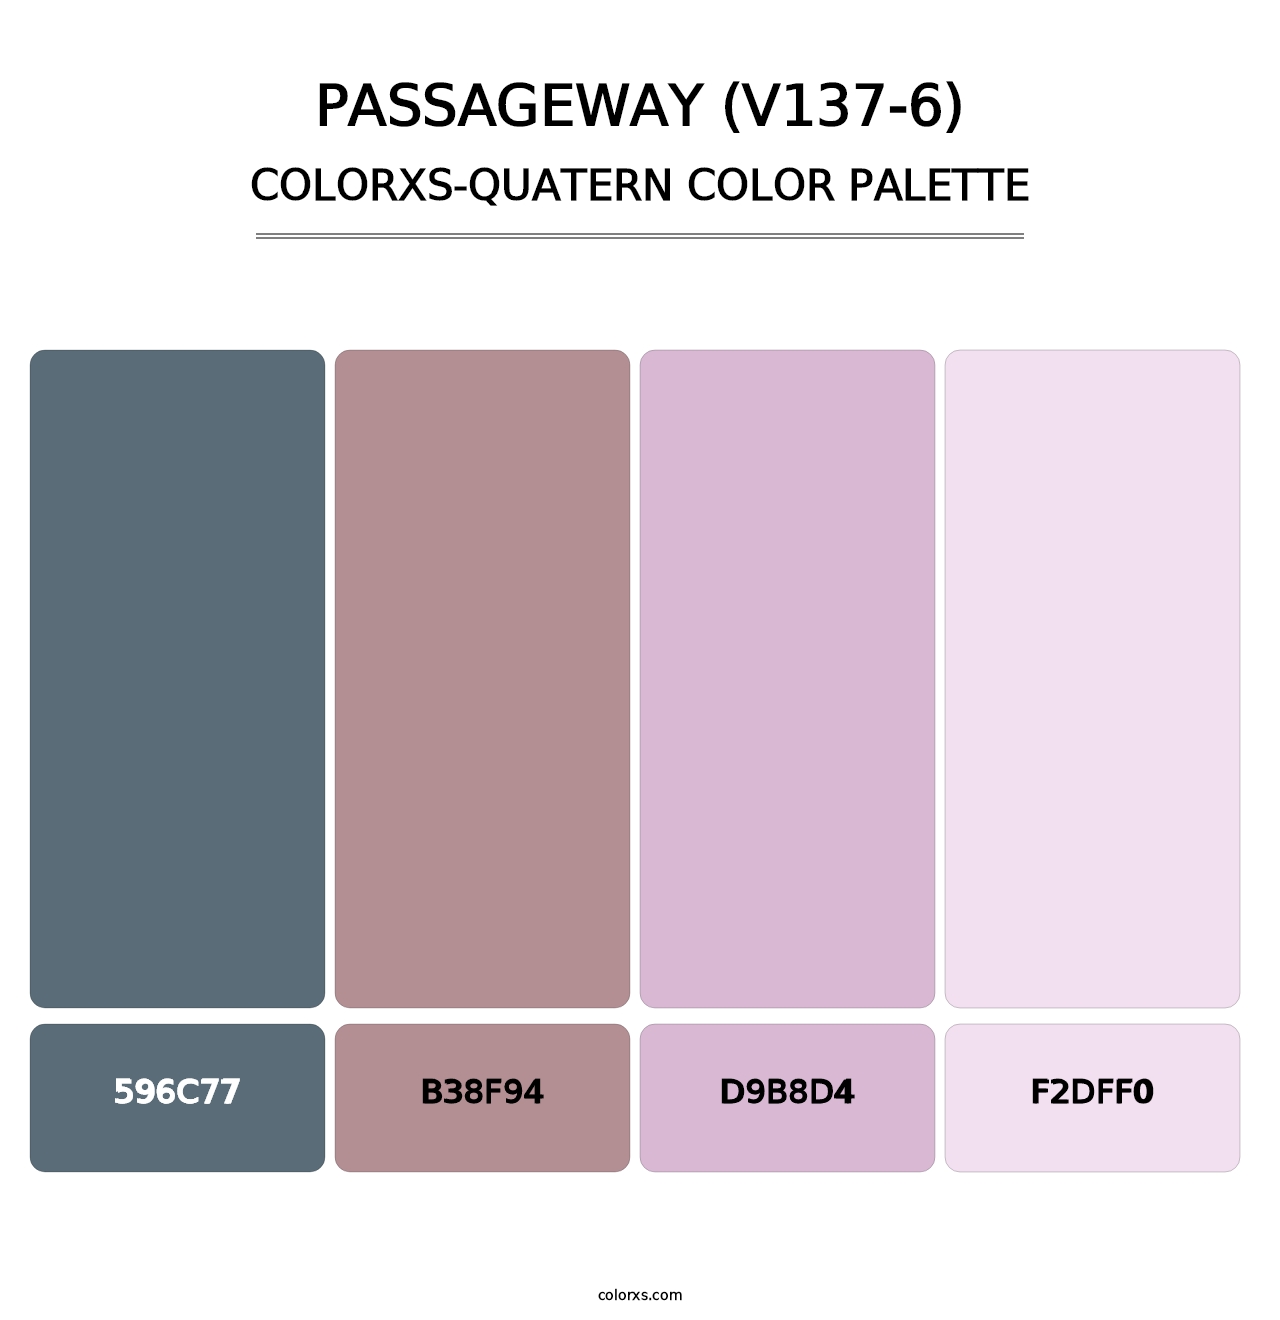 Passageway (V137-6) - Colorxs Quatern Palette